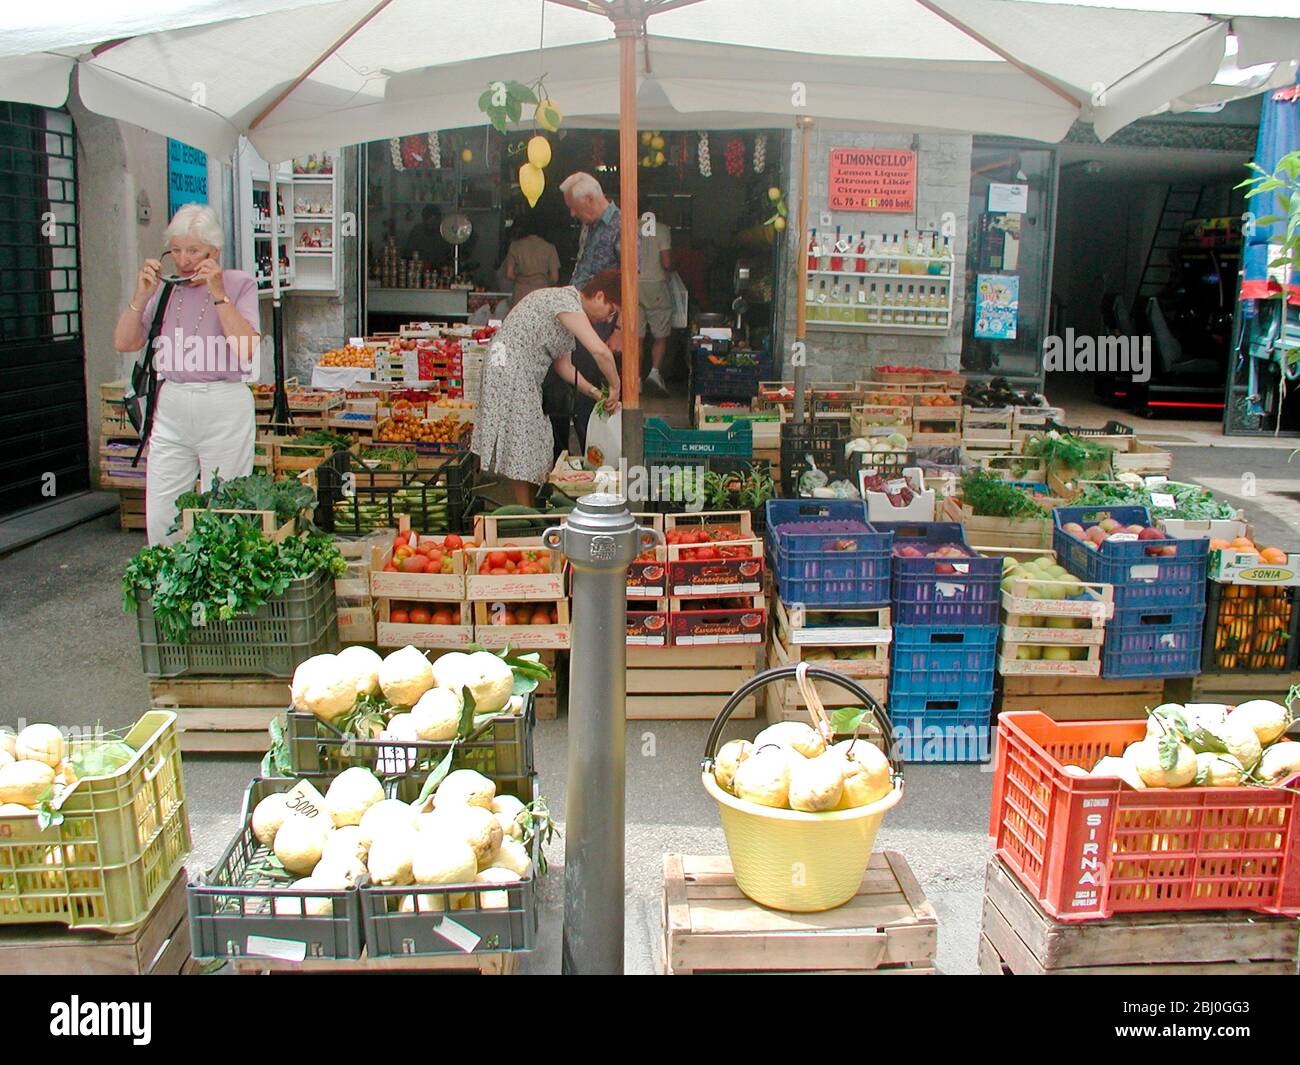 Verdure fresche in scatole sotto gli ombrelloni fuori negozio ad Amalfi, Italia - Foto Stock